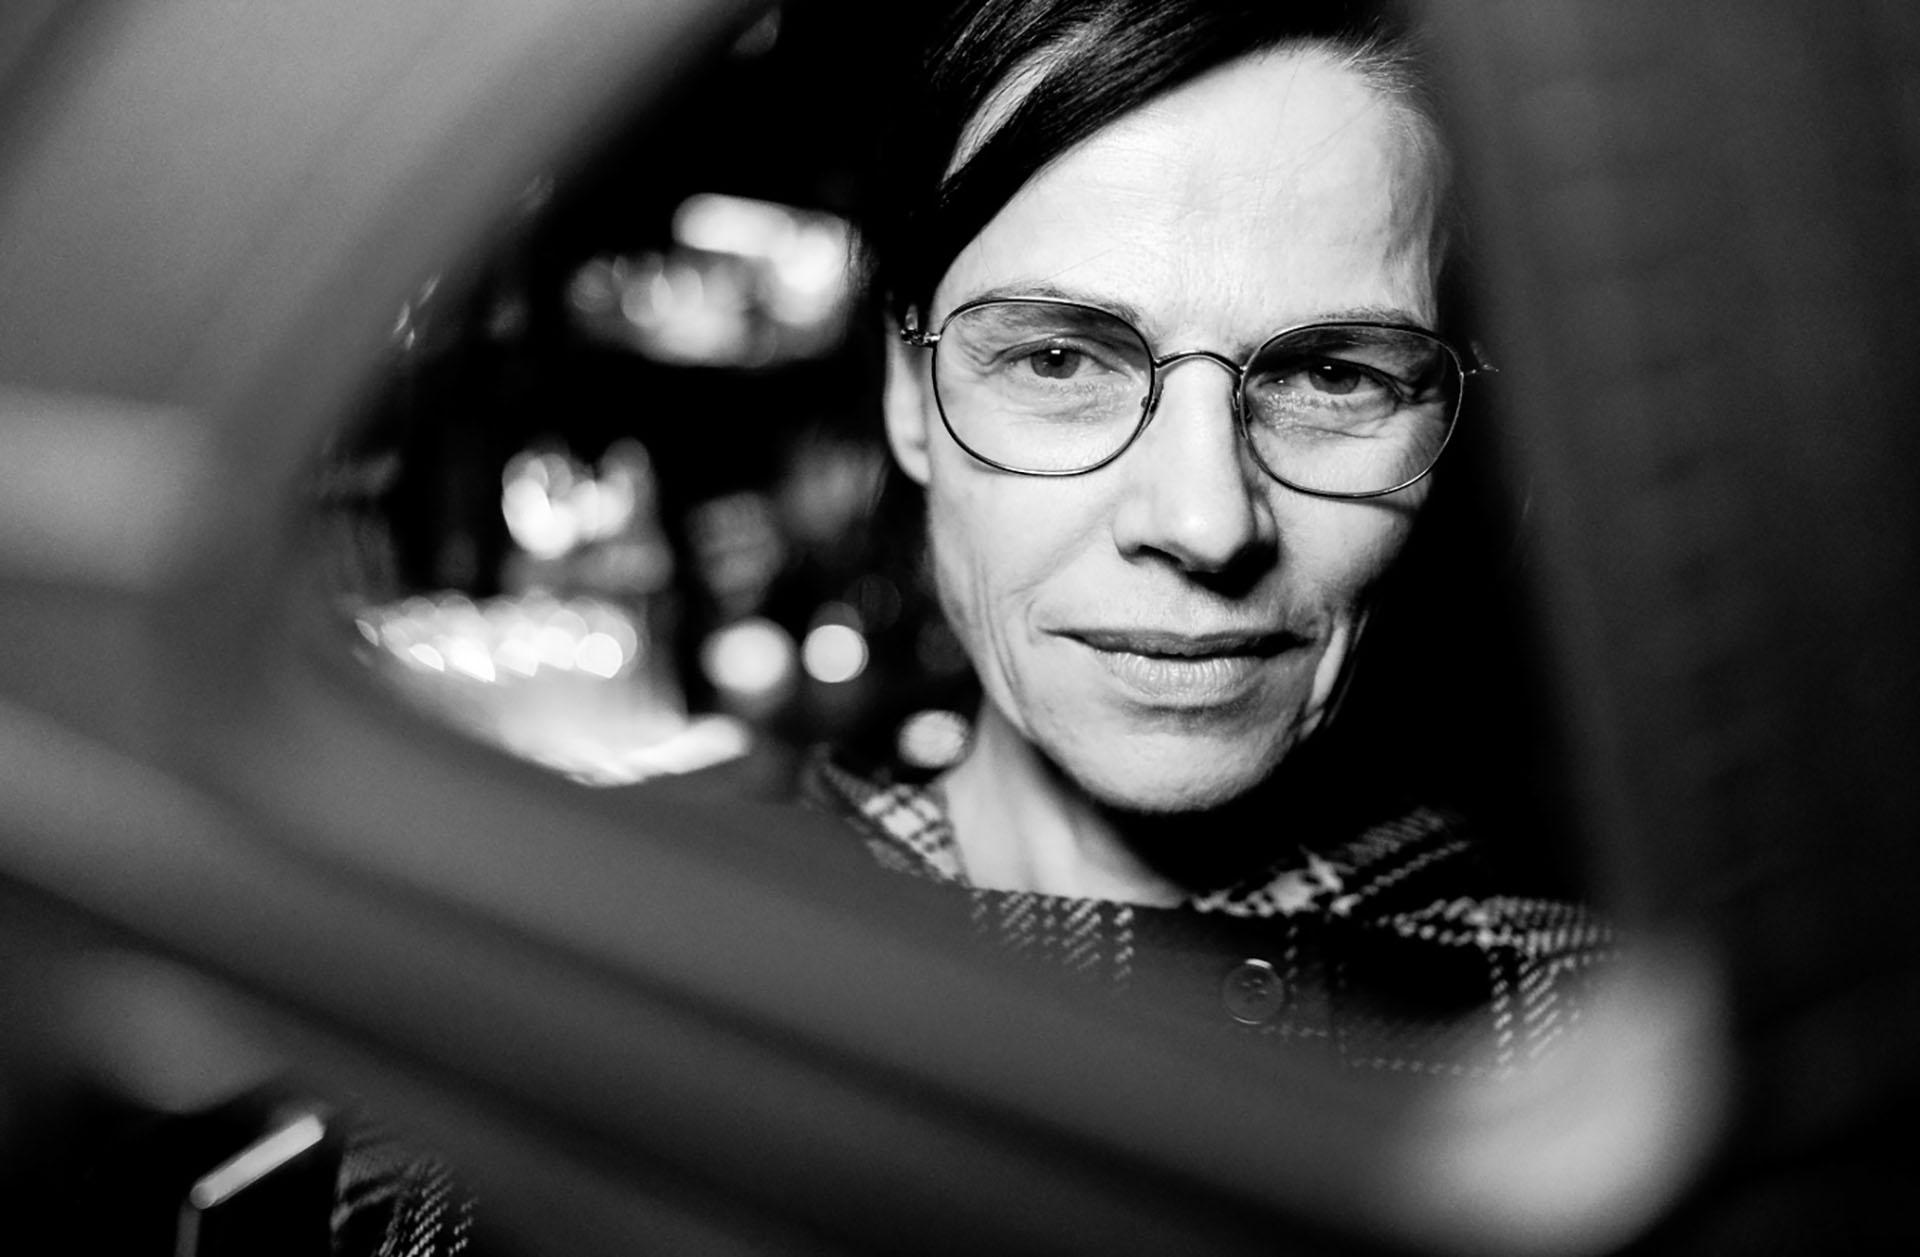 آنگلا شانیلیک، کارگردان فیلم موزیک در جشنواره فیلم برلین